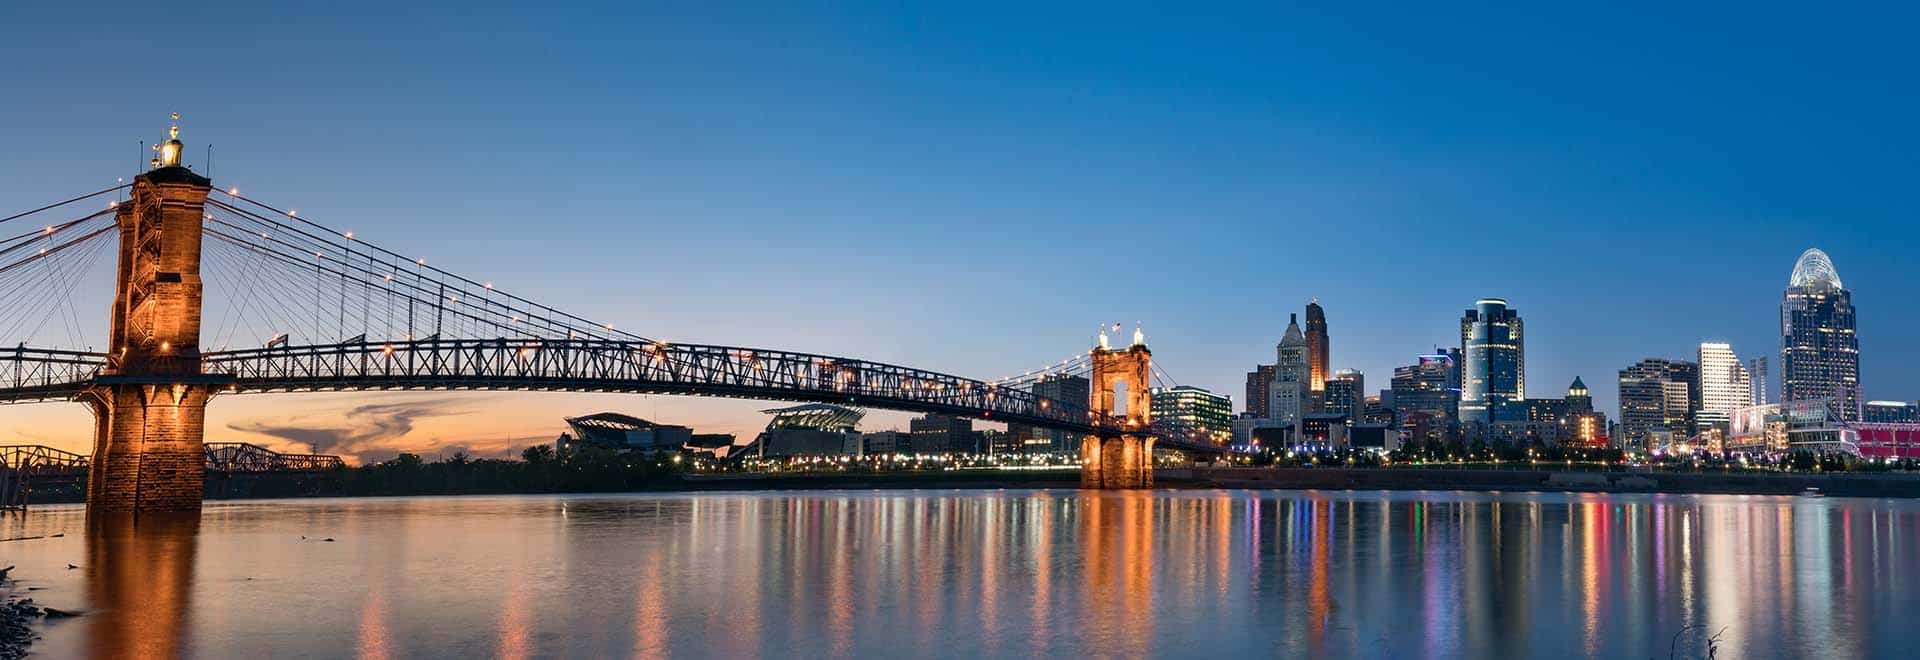 Cincinnati Skyline Admissions